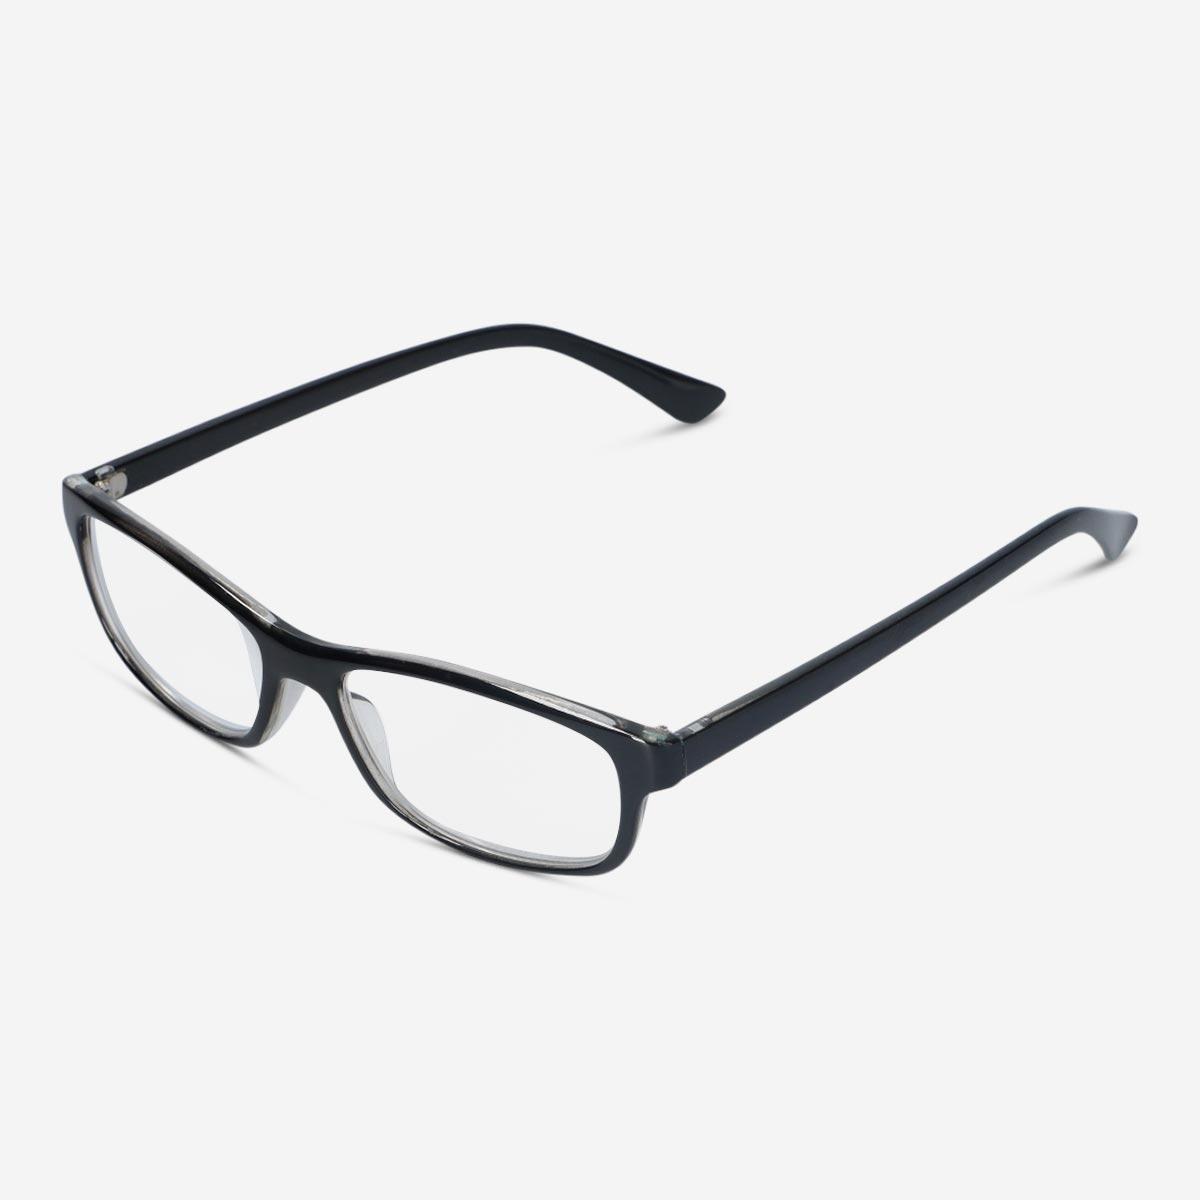 Black reading glasses. + 3.0